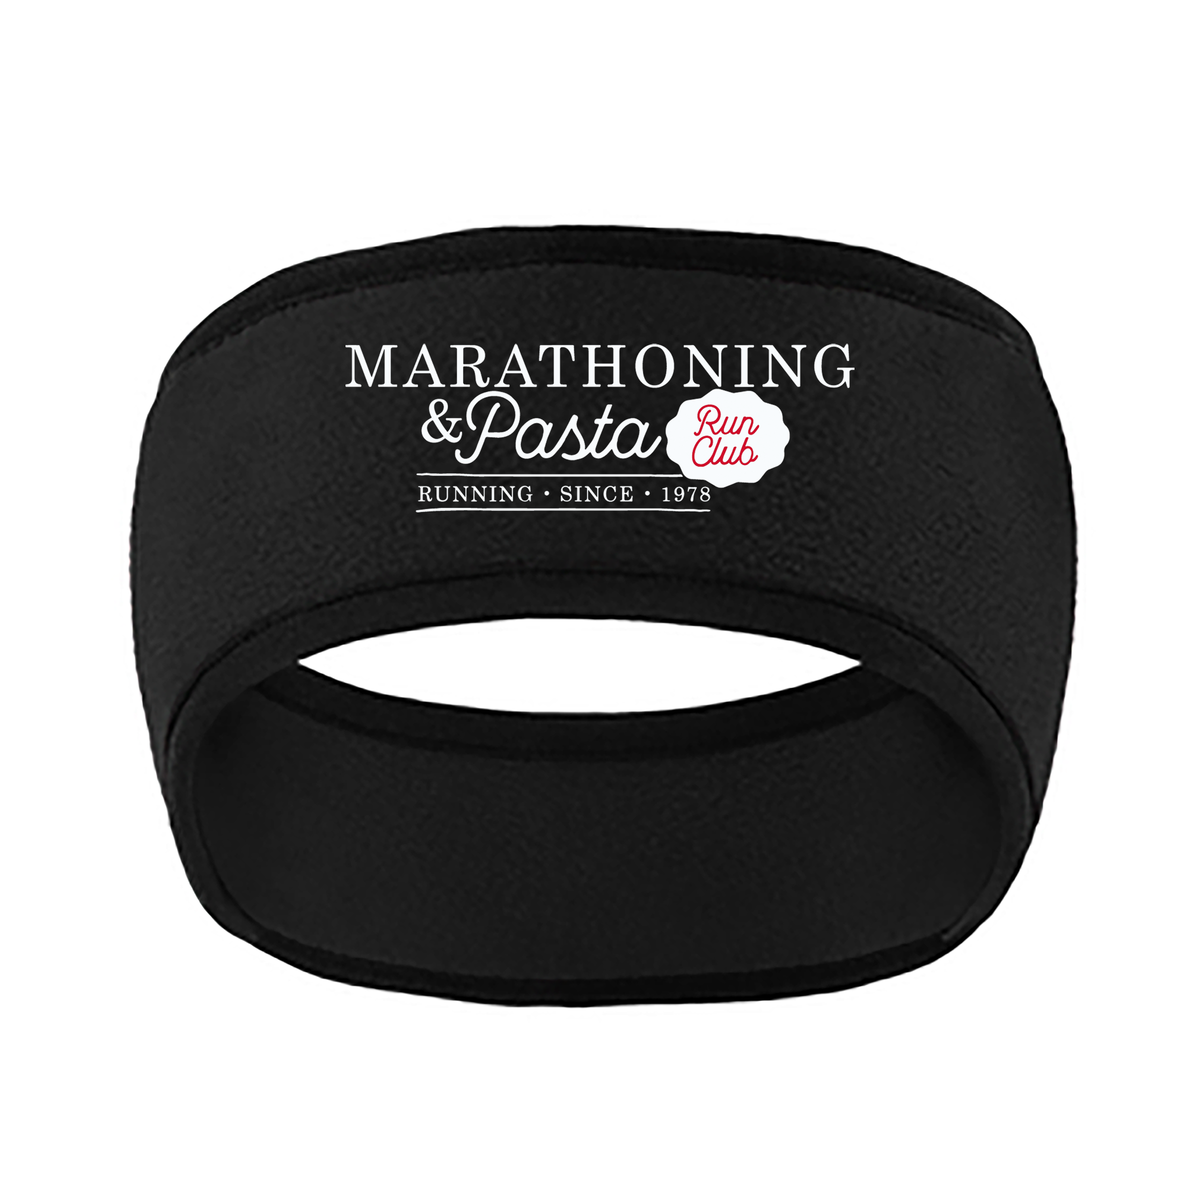 Marathoning and Pasta Club Fleece Headband